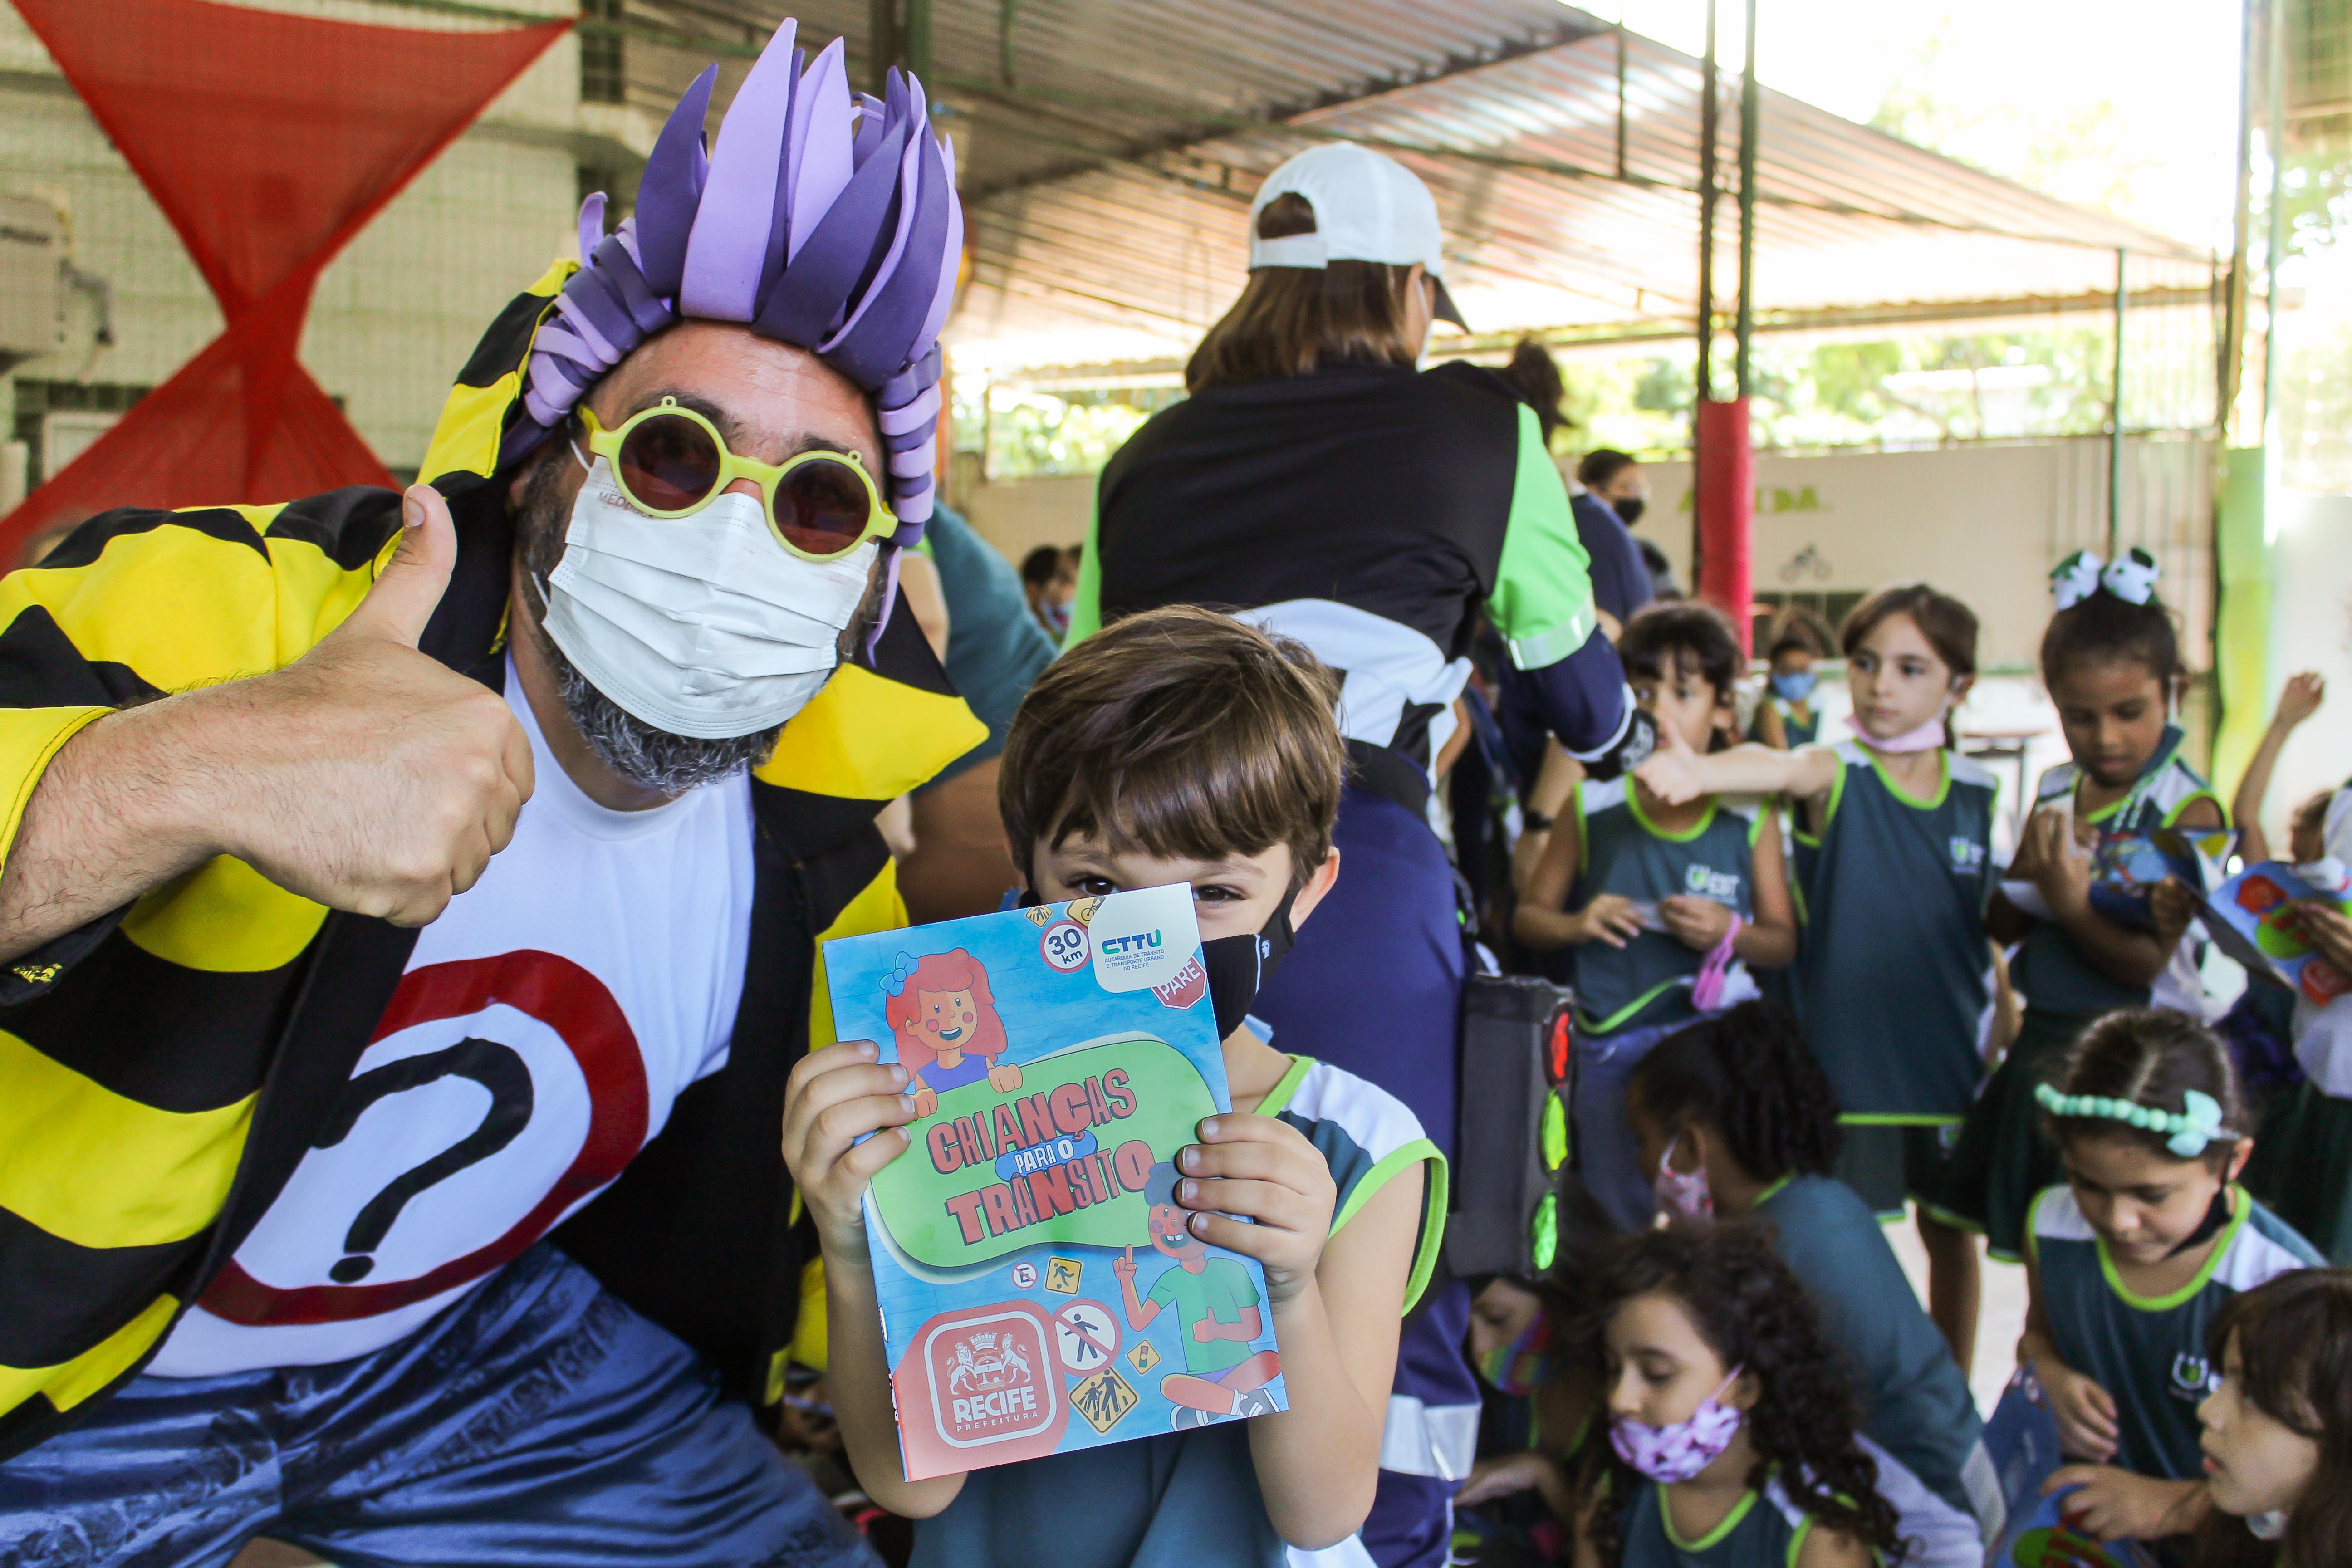 Cartilha educativa "Crianças para o Trânsito" começa a ser distribuída no Recife